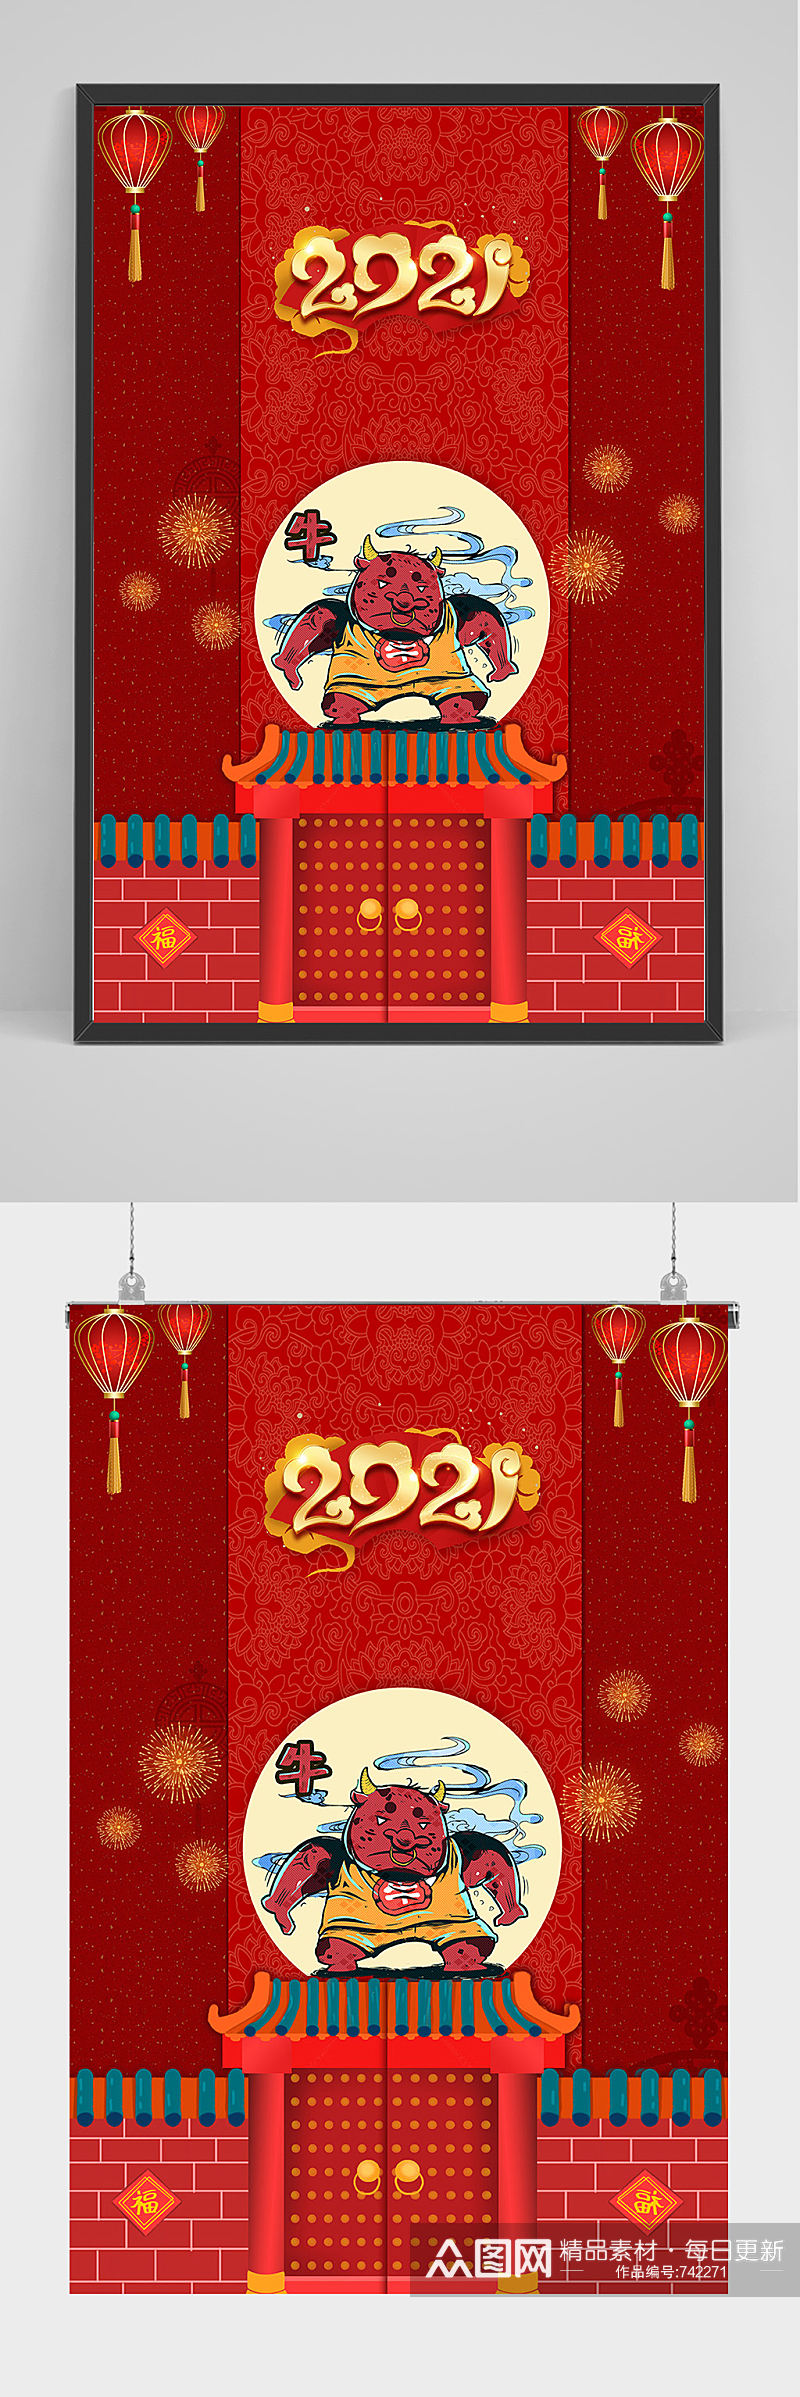 红色喜庆中国风新年2021年海报设计素材